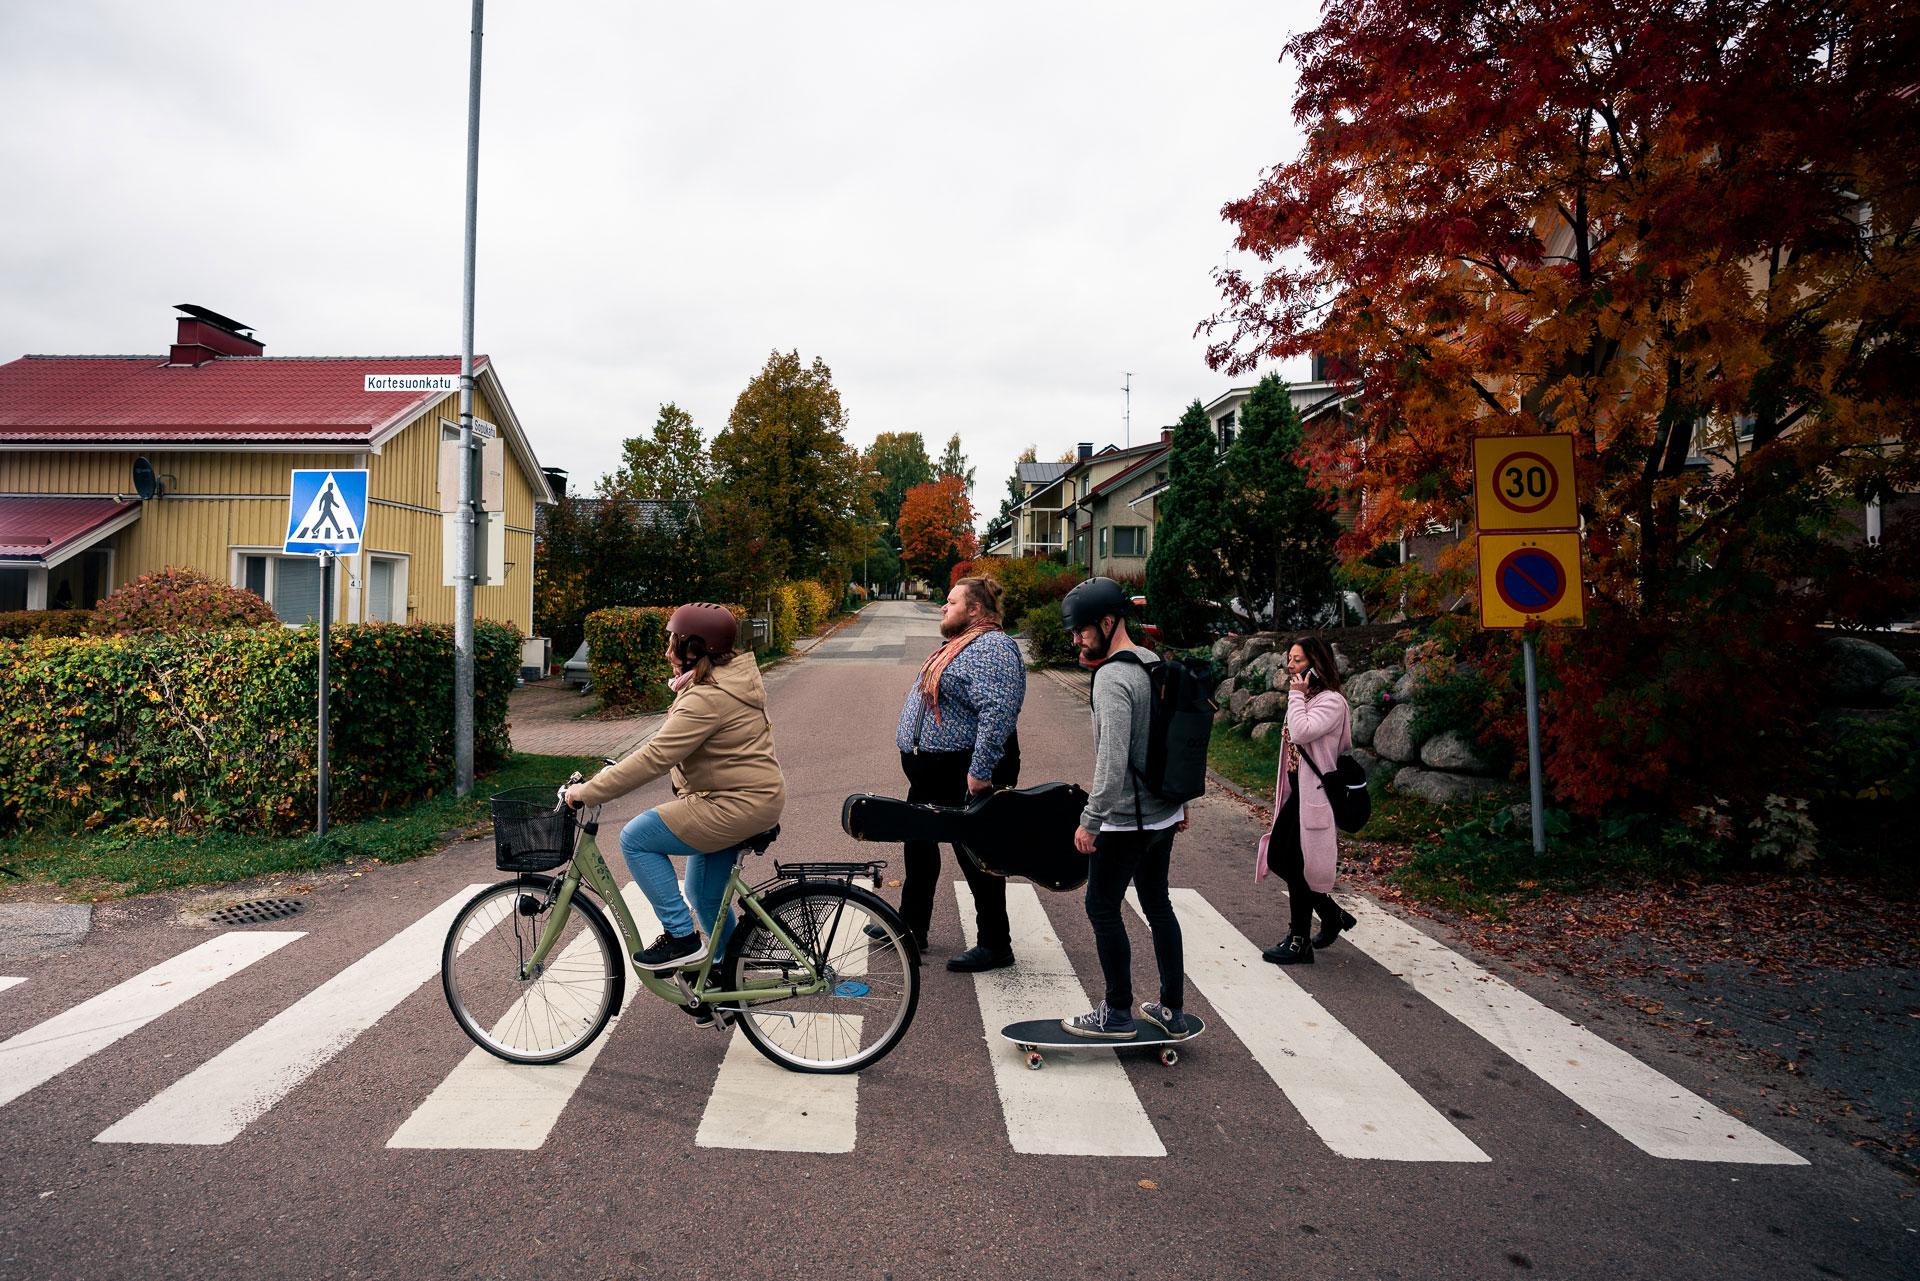 Neljä henkilöä ylittää suojatietä kävellen, pyörällä ja rullalaudalla.